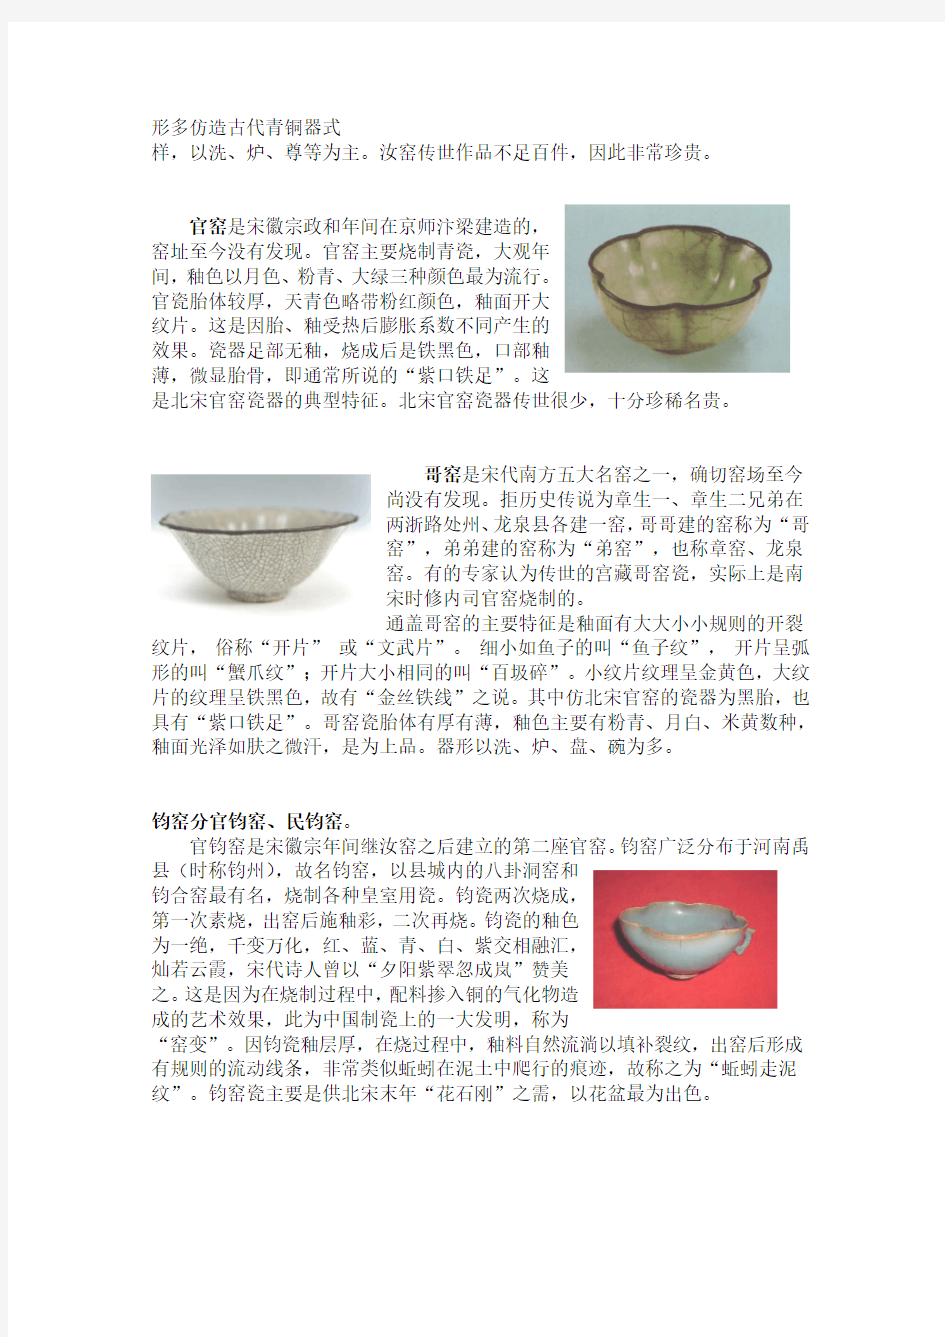 宋朝瓷器是中国瓷器史上发展的巅峰